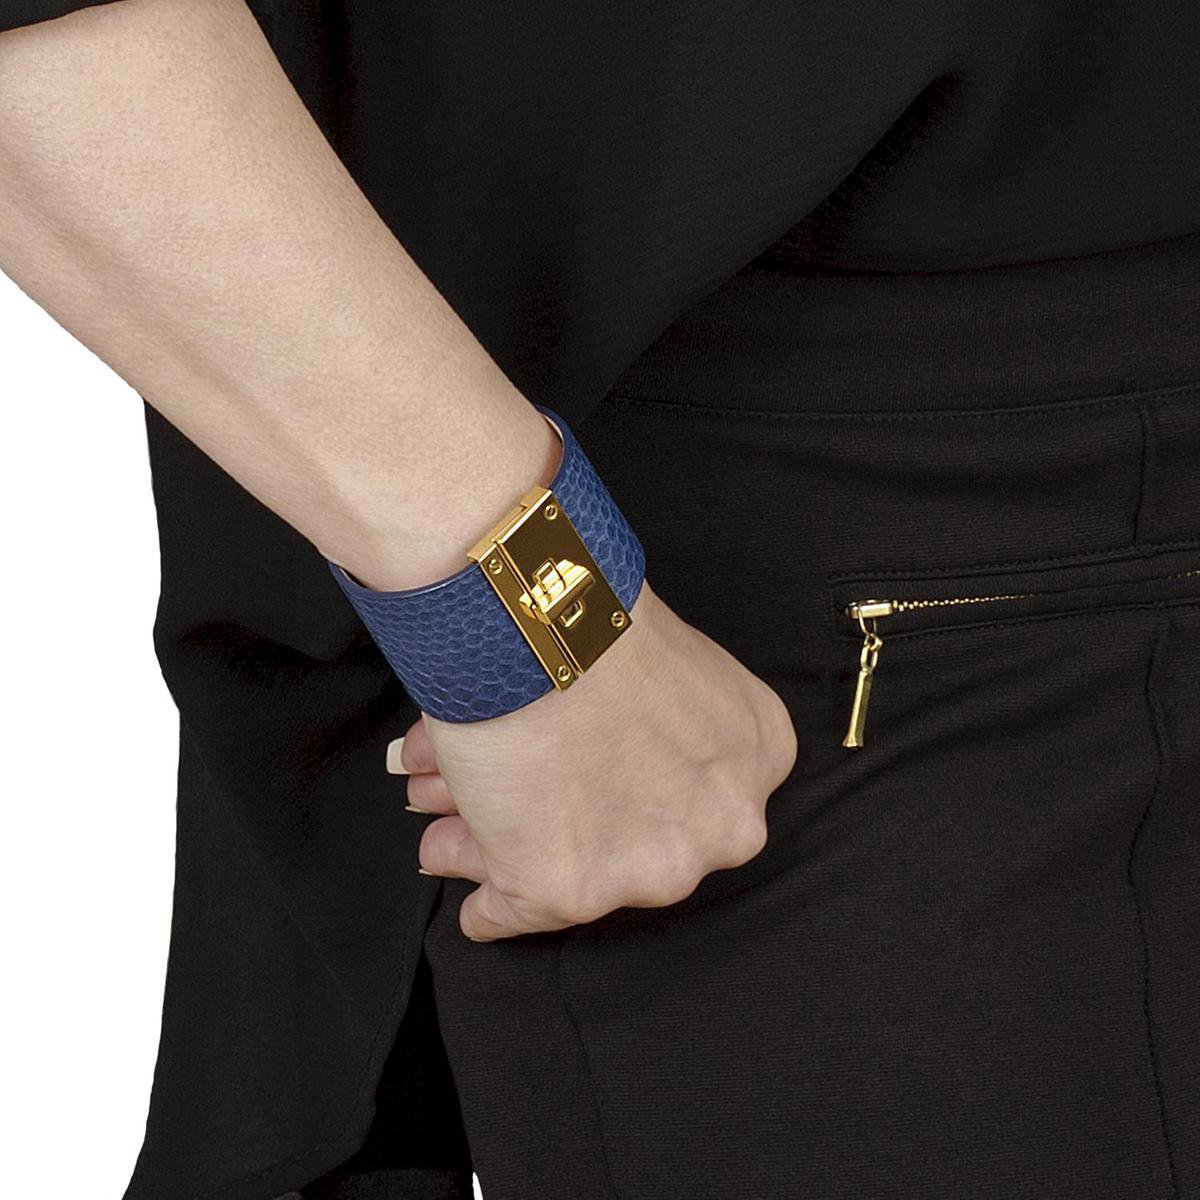 NEW SALE van 88,00 EUR afgeprijsd, BELUCIA dames armband SK-03 kalfsleer shiny blauw, goudkleurig, maat 16,8 cm